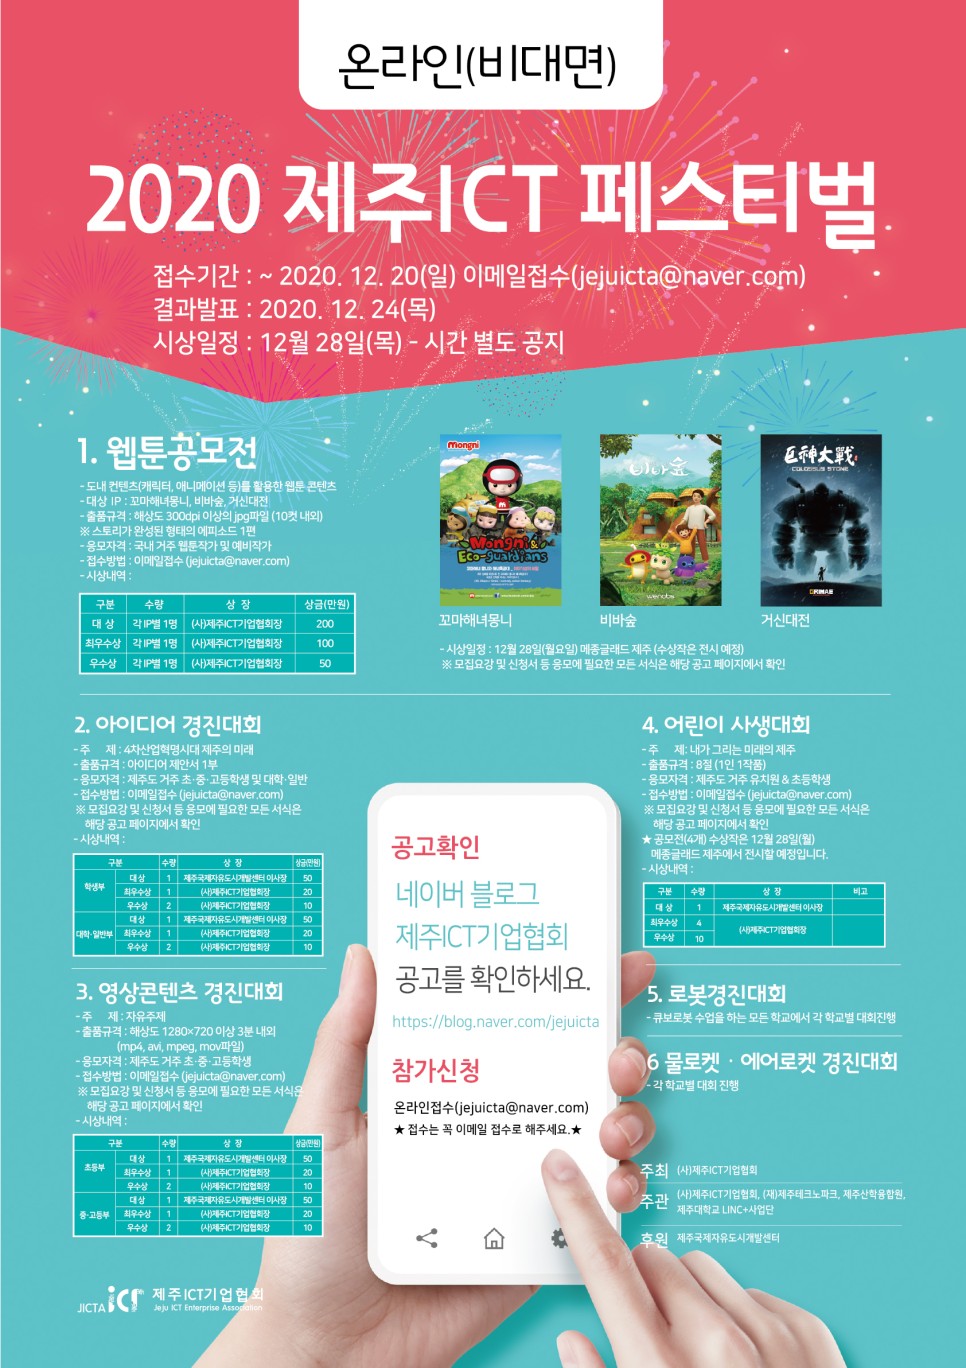 2020 제주 ICT 페스티벌 공모전 (웹툰, 아이디어, 영상, 사생대회)